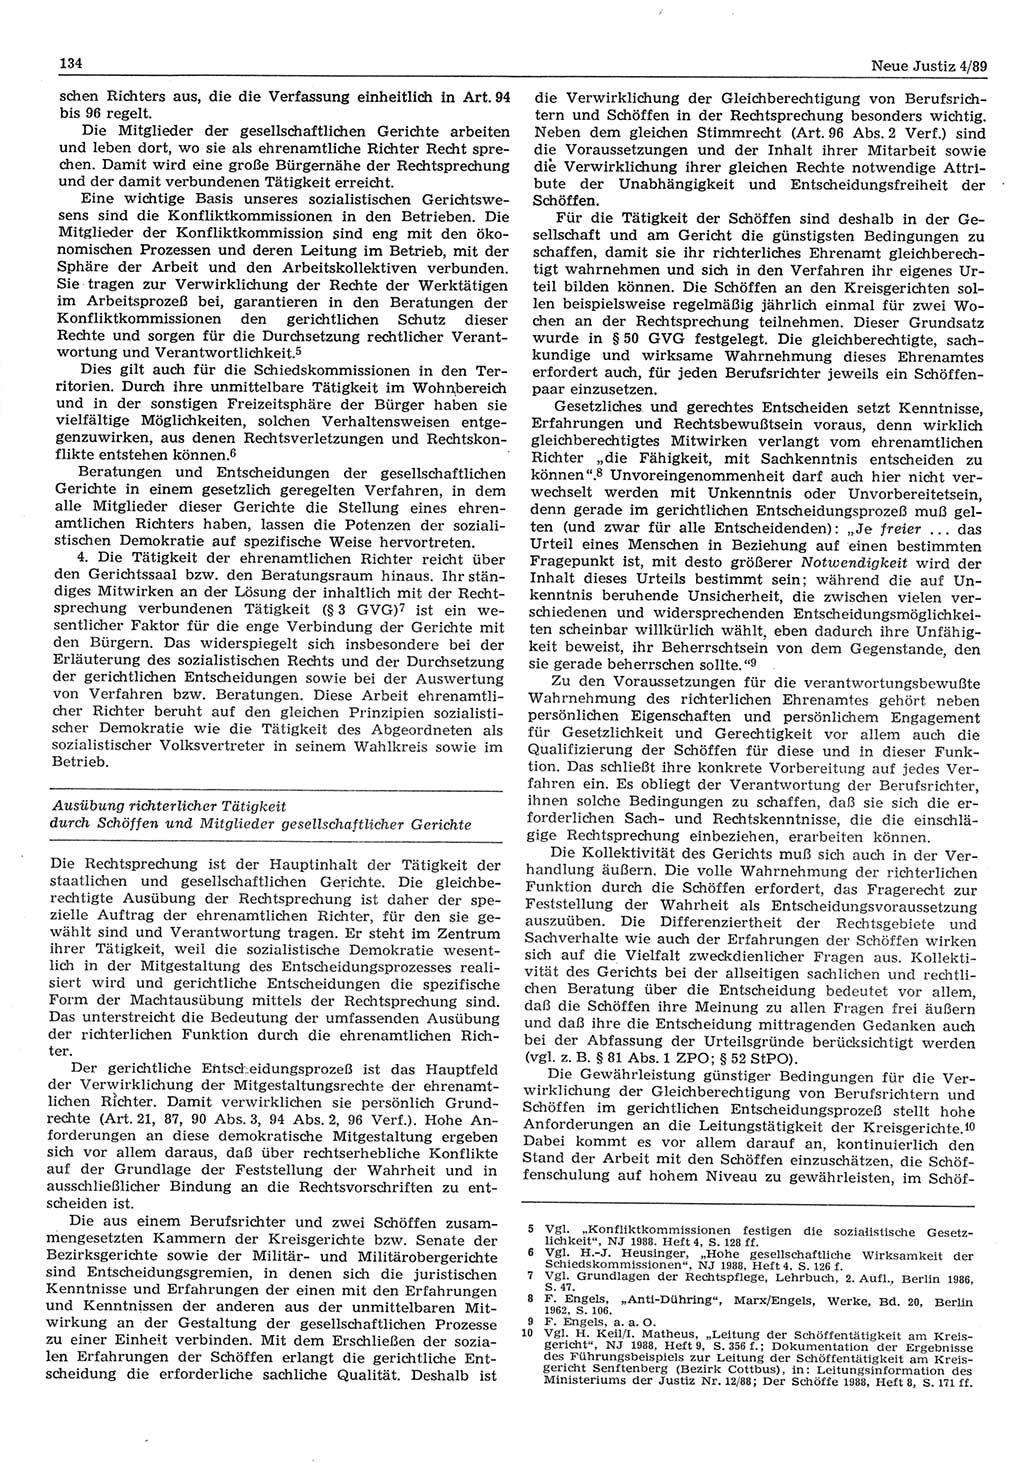 Neue Justiz (NJ), Zeitschrift für sozialistisches Recht und Gesetzlichkeit [Deutsche Demokratische Republik (DDR)], 43. Jahrgang 1989, Seite 134 (NJ DDR 1989, S. 134)